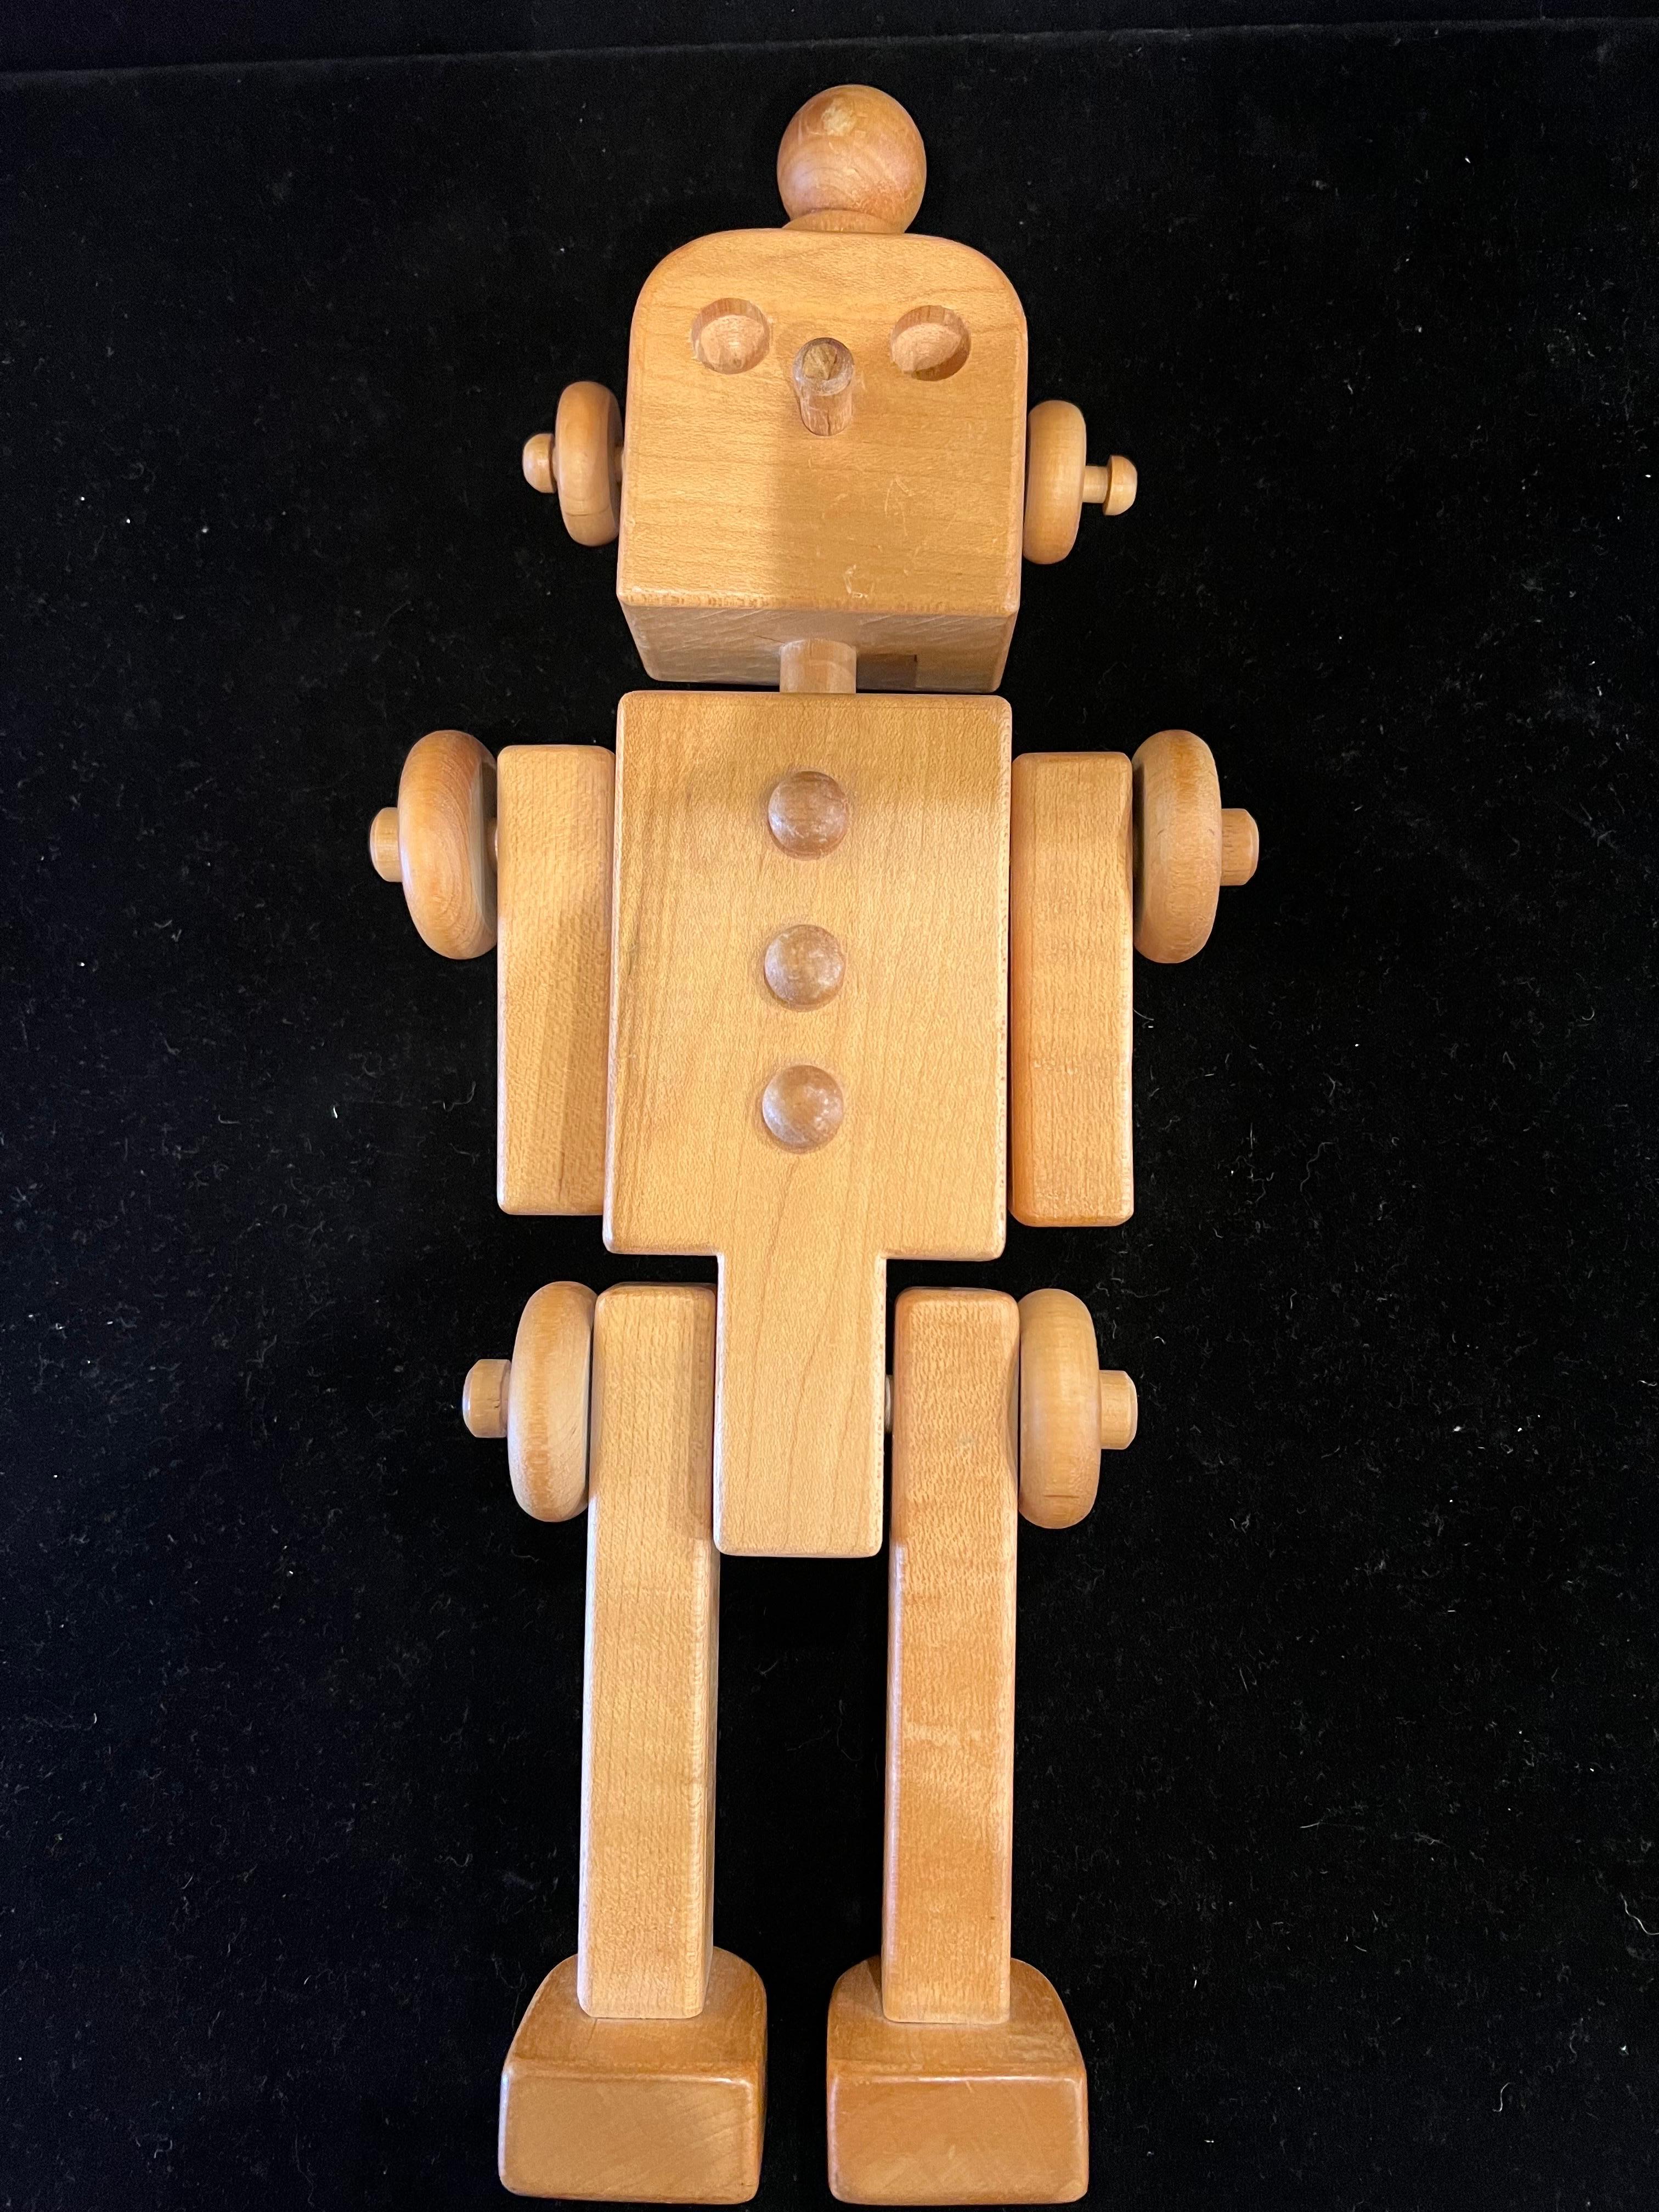 1980s toy robots